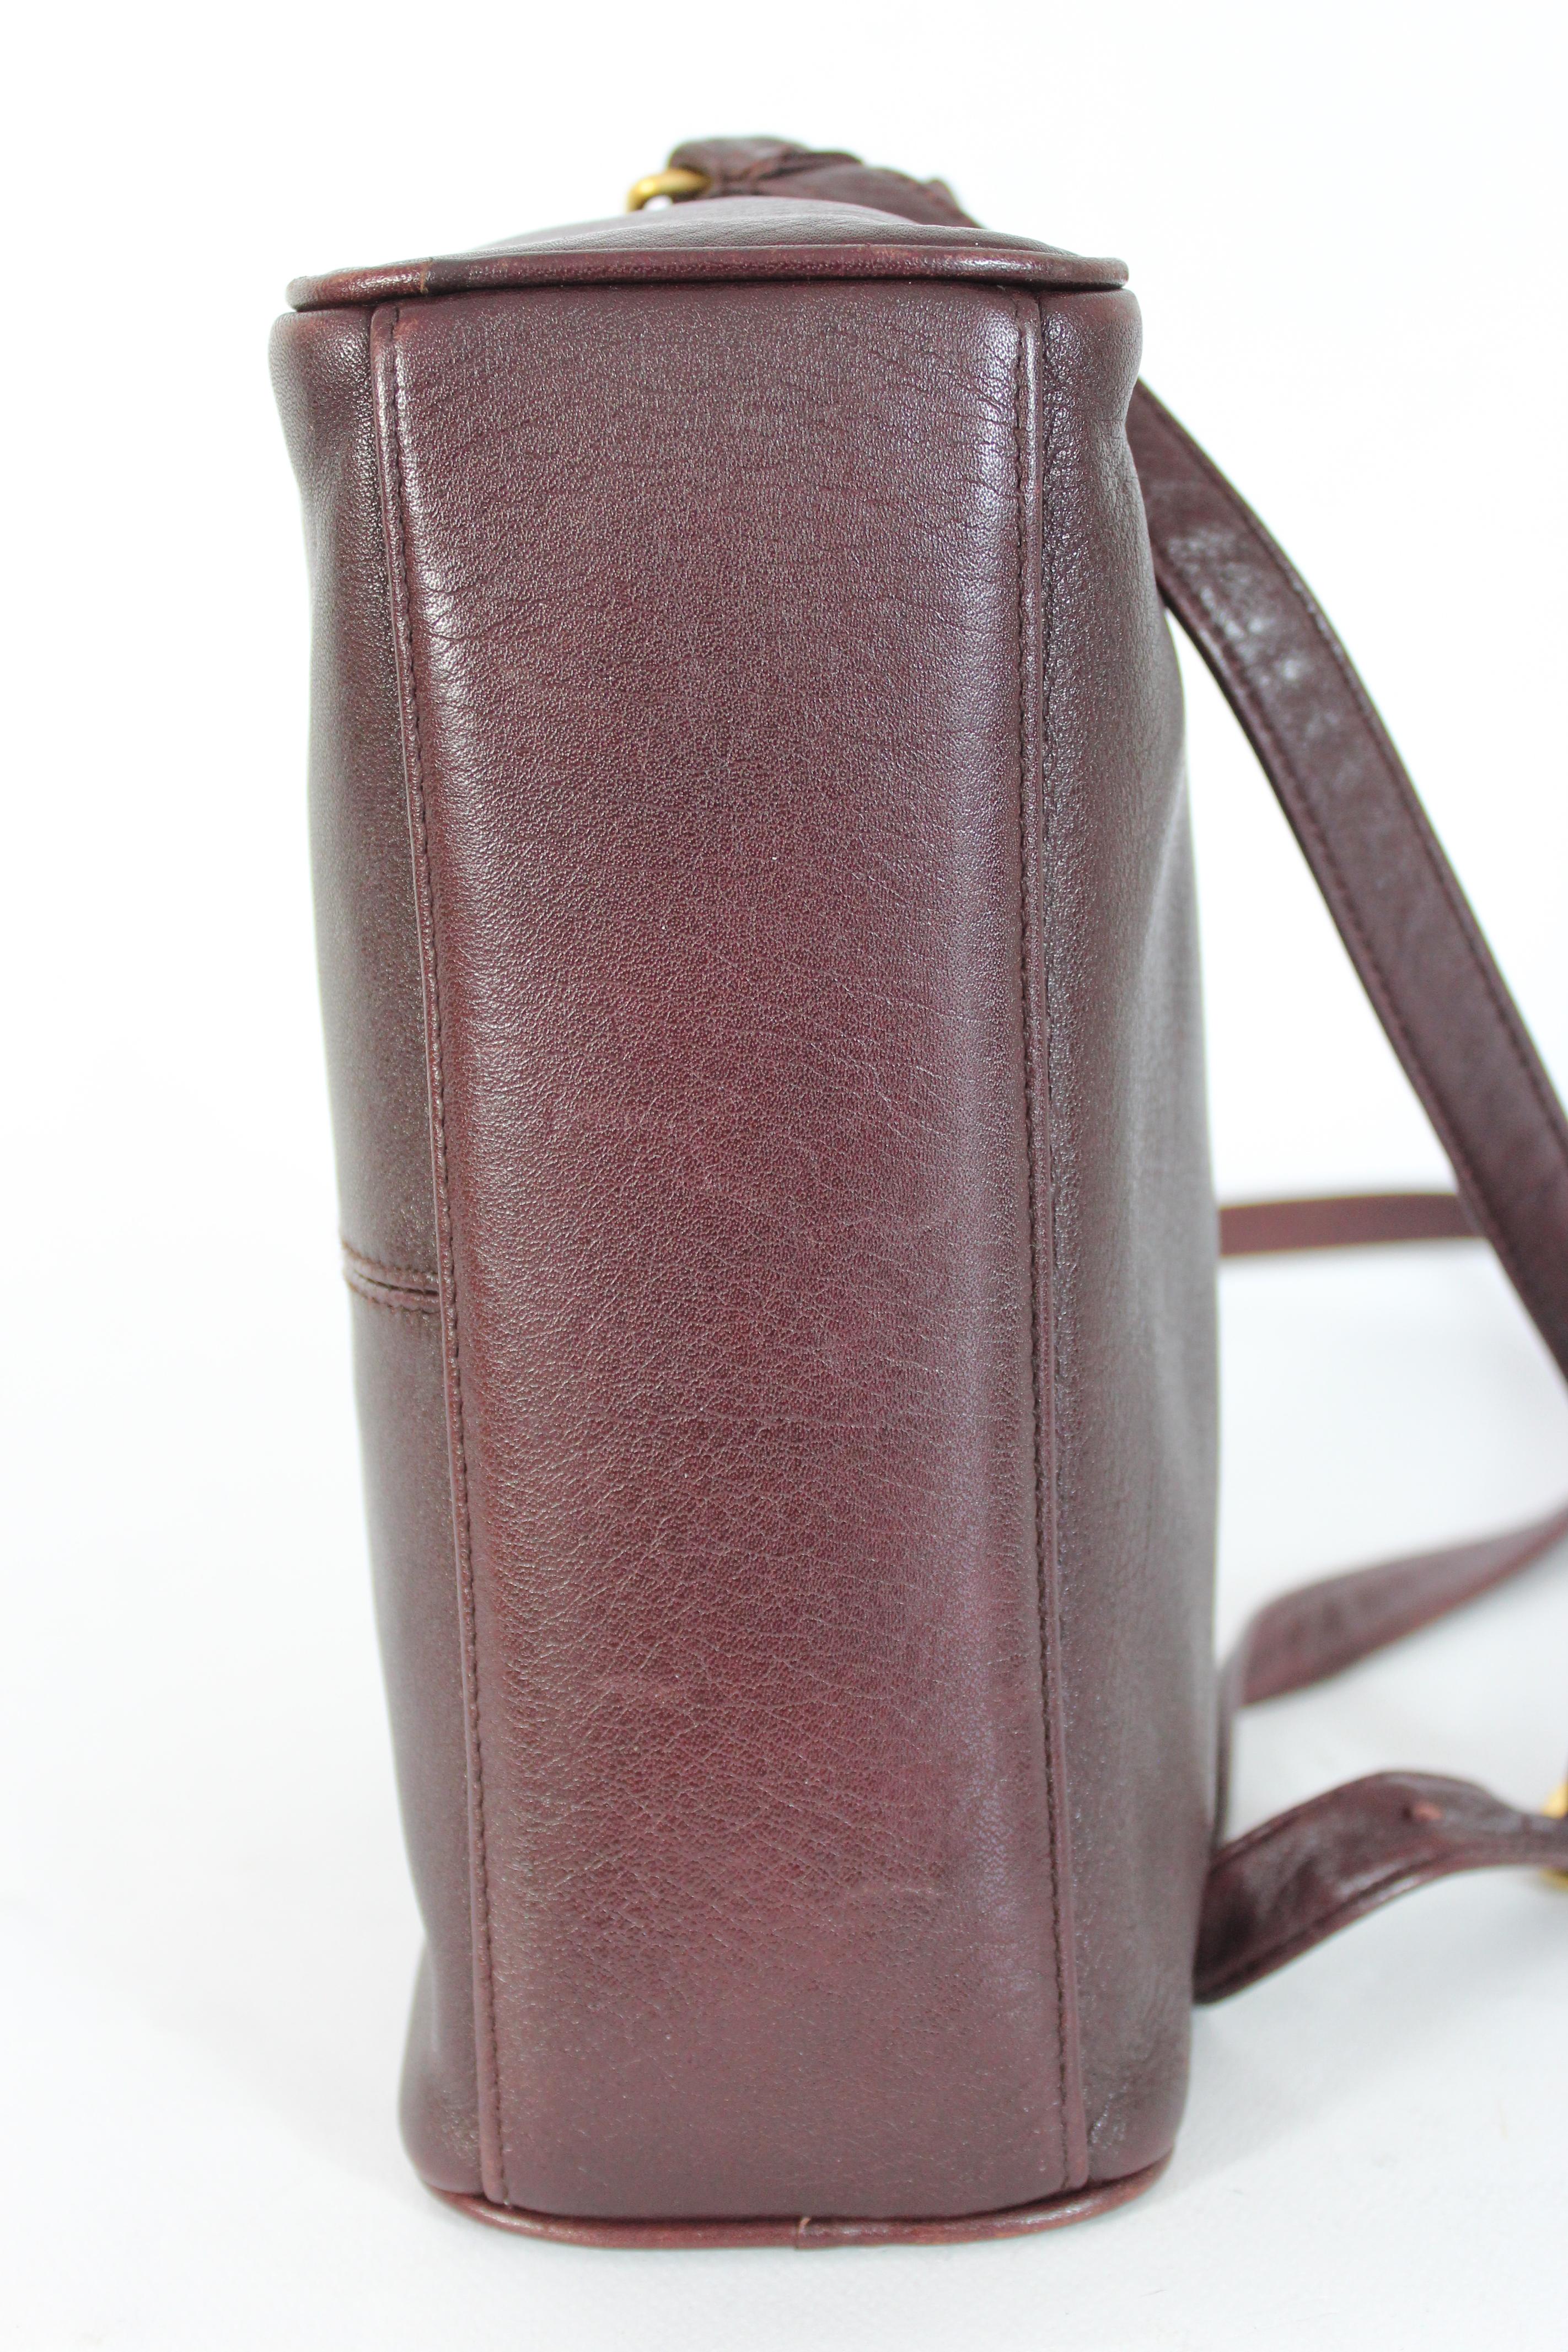 Black Etienne Aigner Burgundy Leather Shoulder Bag 1980s